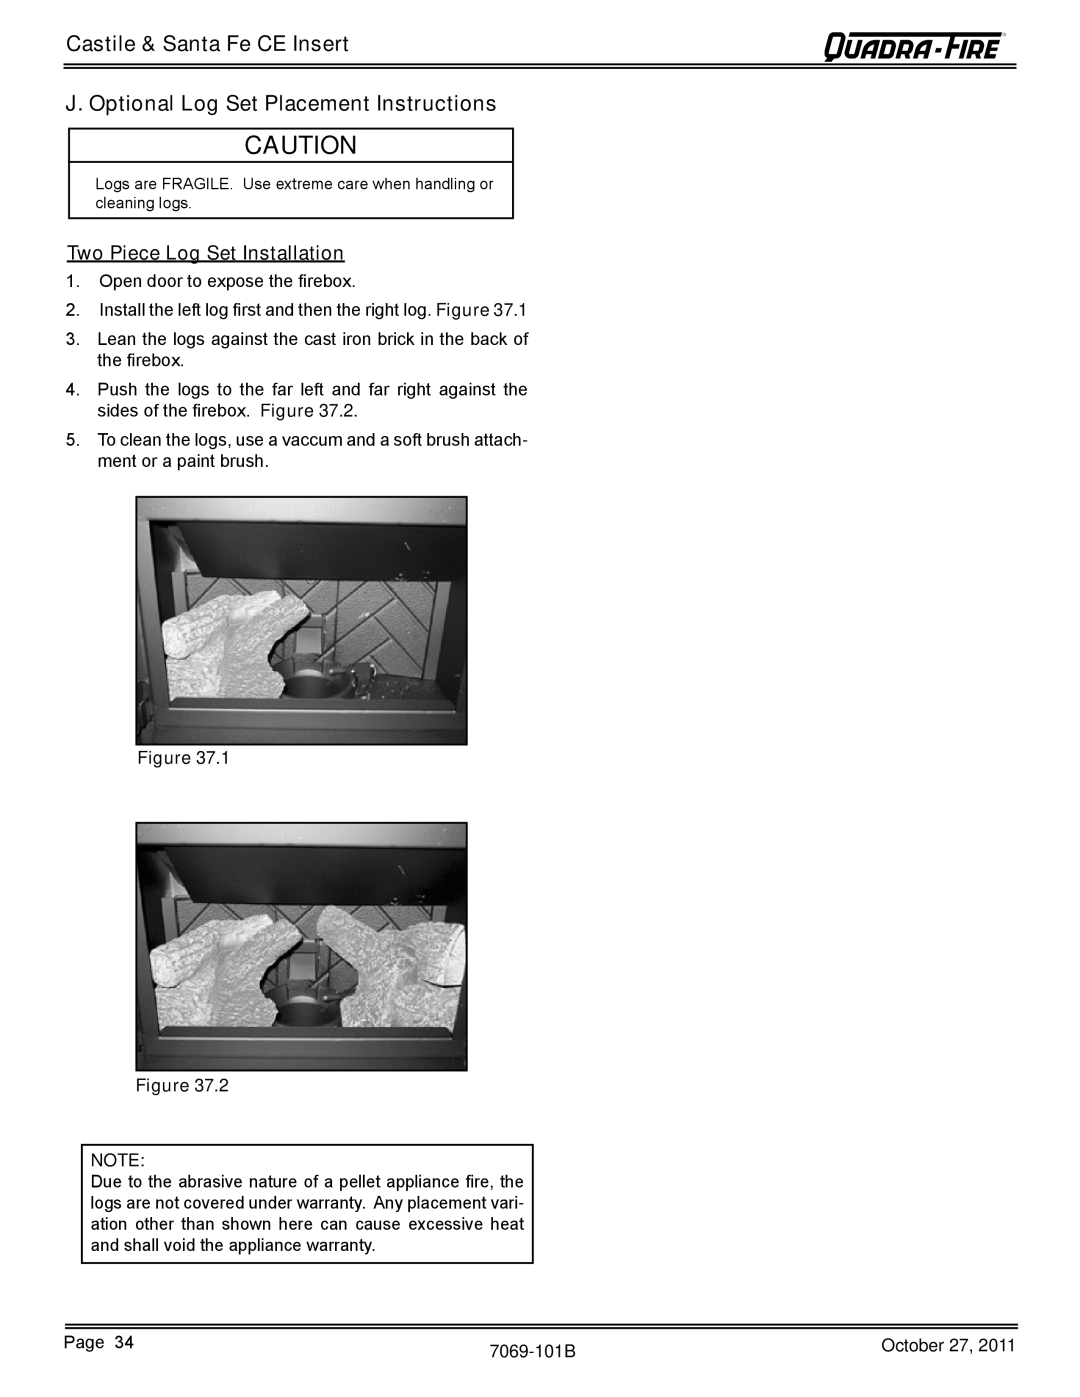 Quadra-Fire SANTAFEI-CE-MBK J. Optional Log Set Placement Instructions, Castile & Santa Fe CE Insert, Figure Figure 